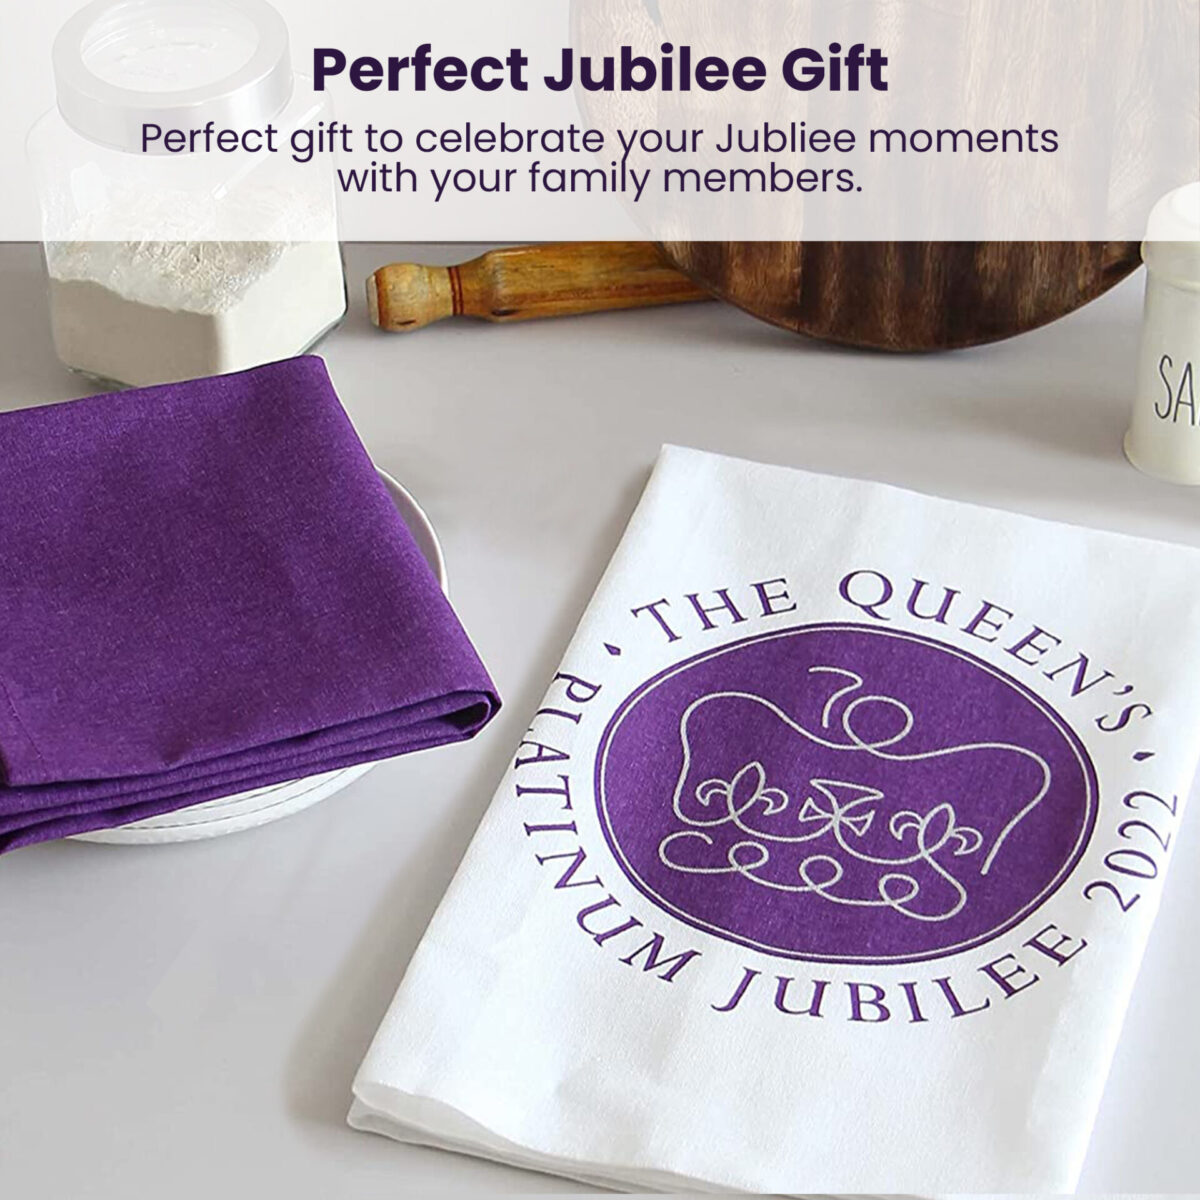 Jubilee-tea-towel-Price-Cruncher